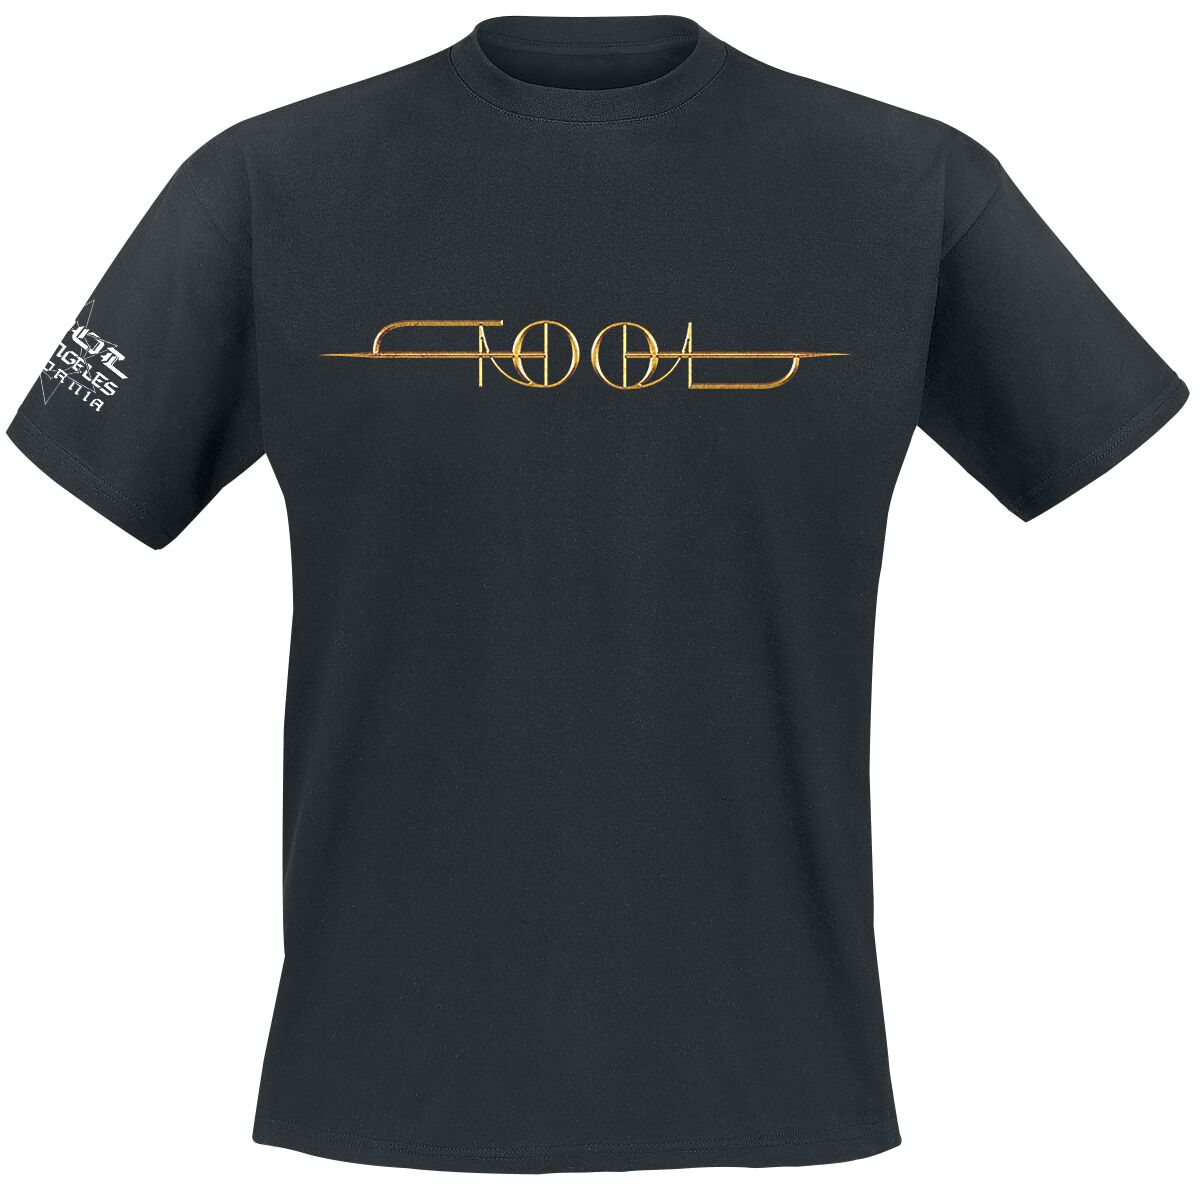 Tool T-Shirt - Gold ISO - M bis XXL - für Männer - Größe M - schwarz  - Lizenziertes Merchandise!